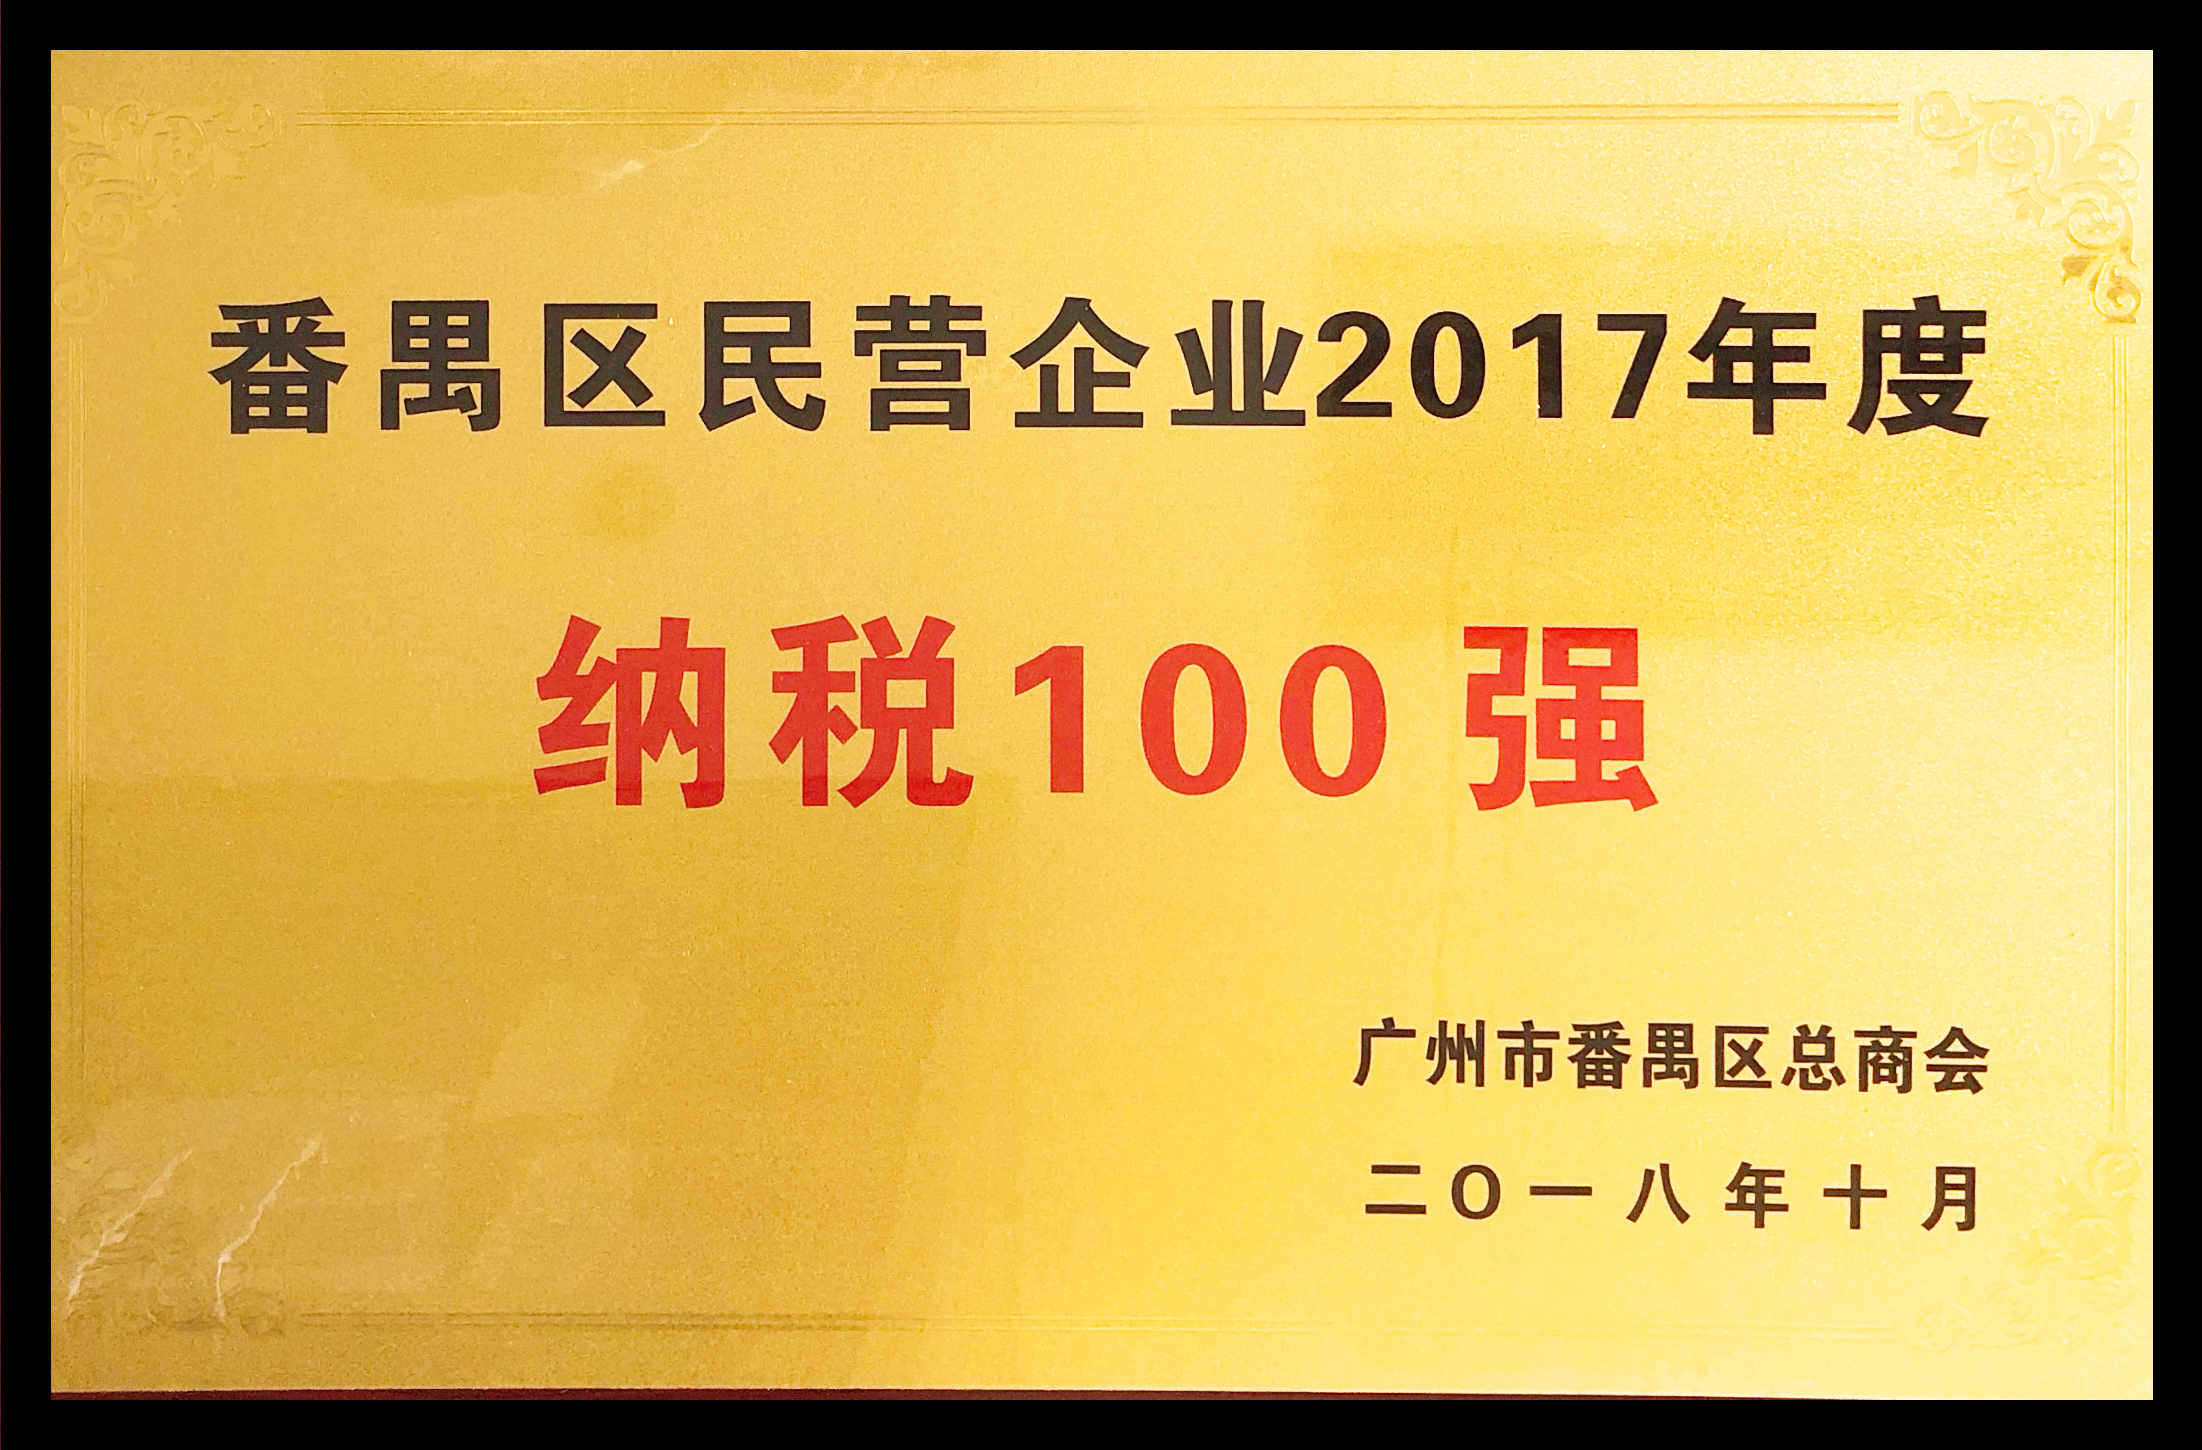 番禺区民营企业2017年度纳税100强